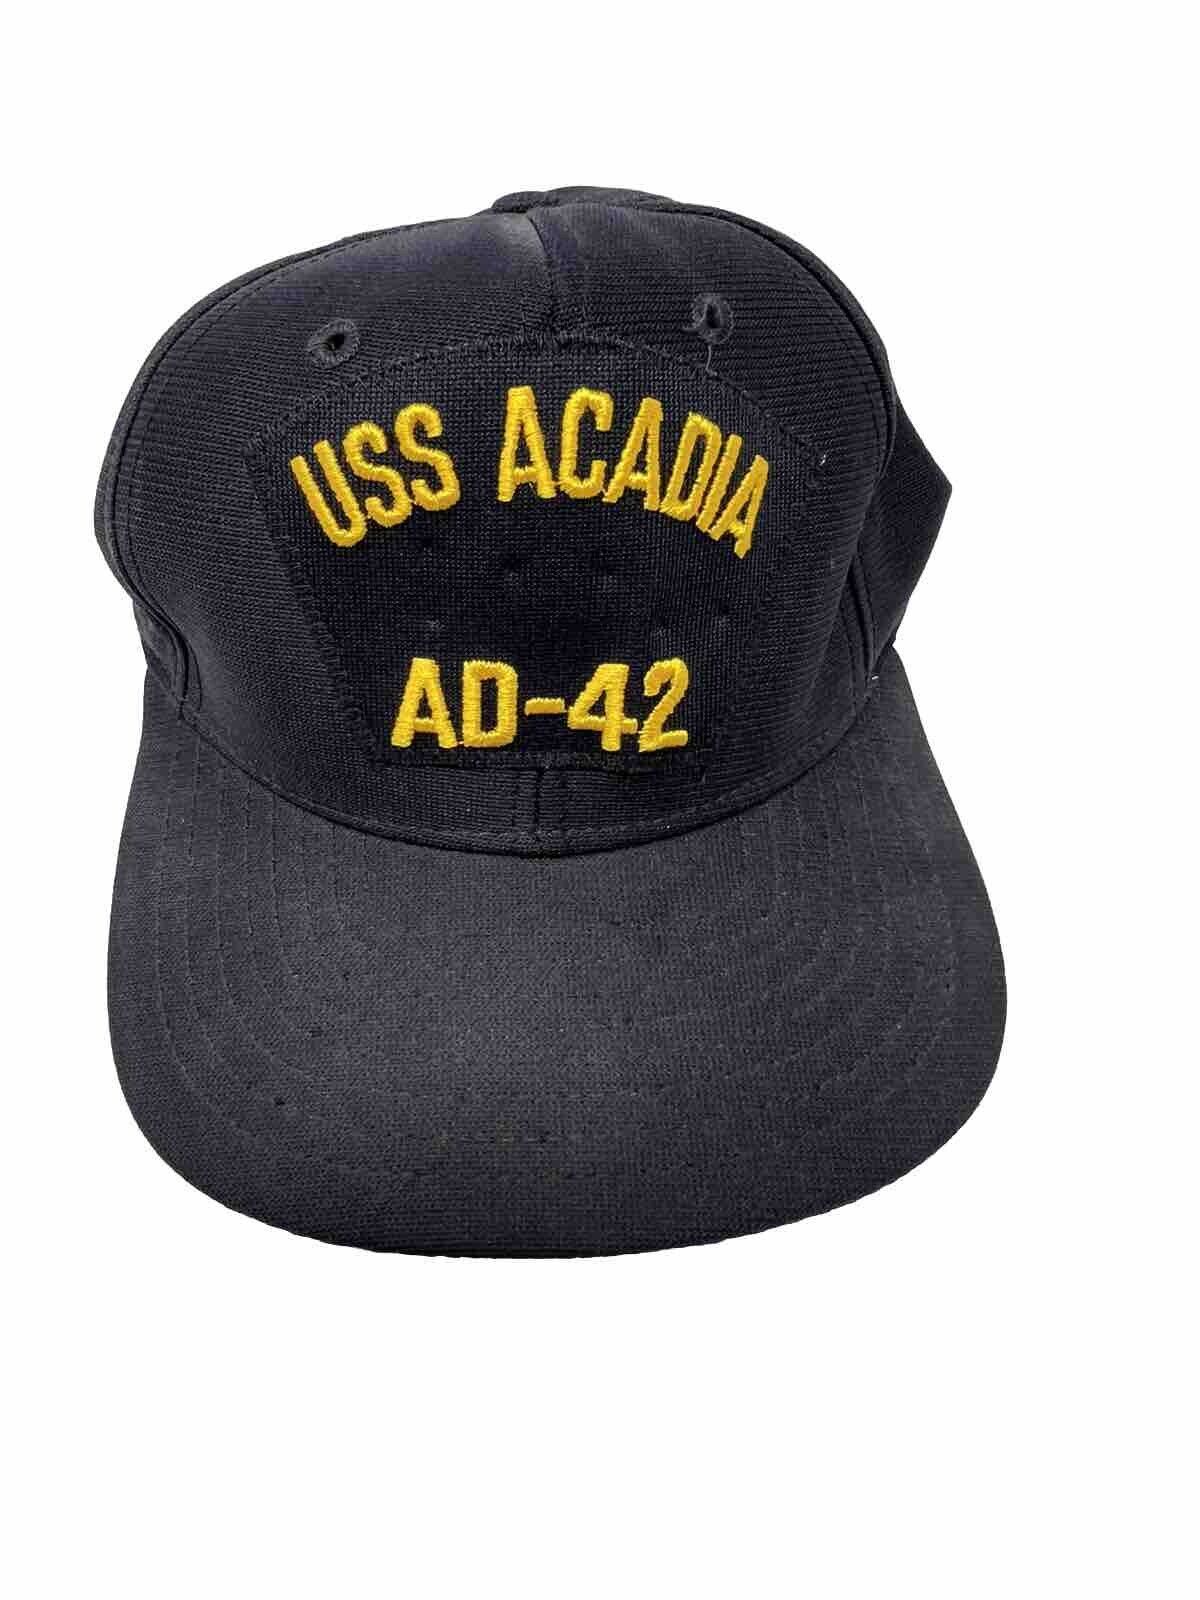 VTG United States Navy USS ACADIA AD-42 SnapBack Black Hat  New Era Sz. M-L